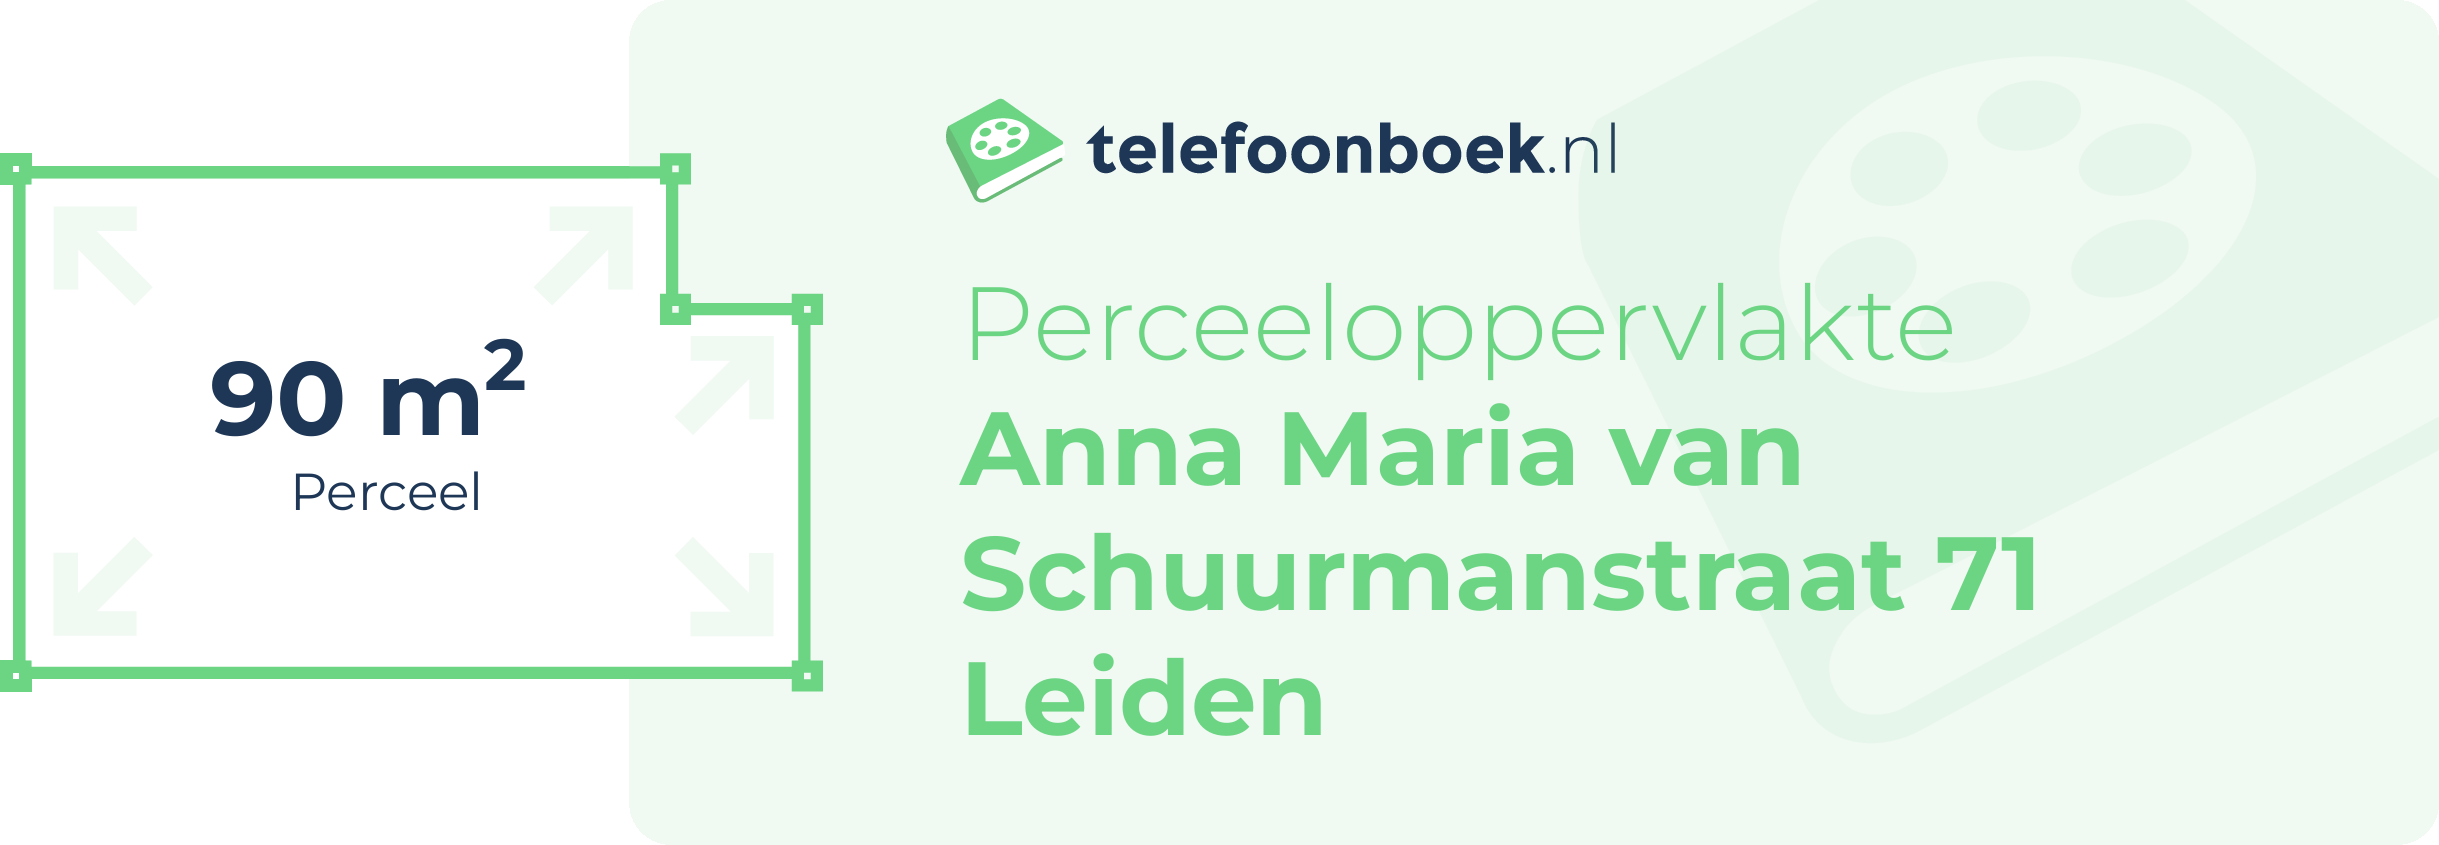 Perceeloppervlakte Anna Maria Van Schuurmanstraat 71 Leiden